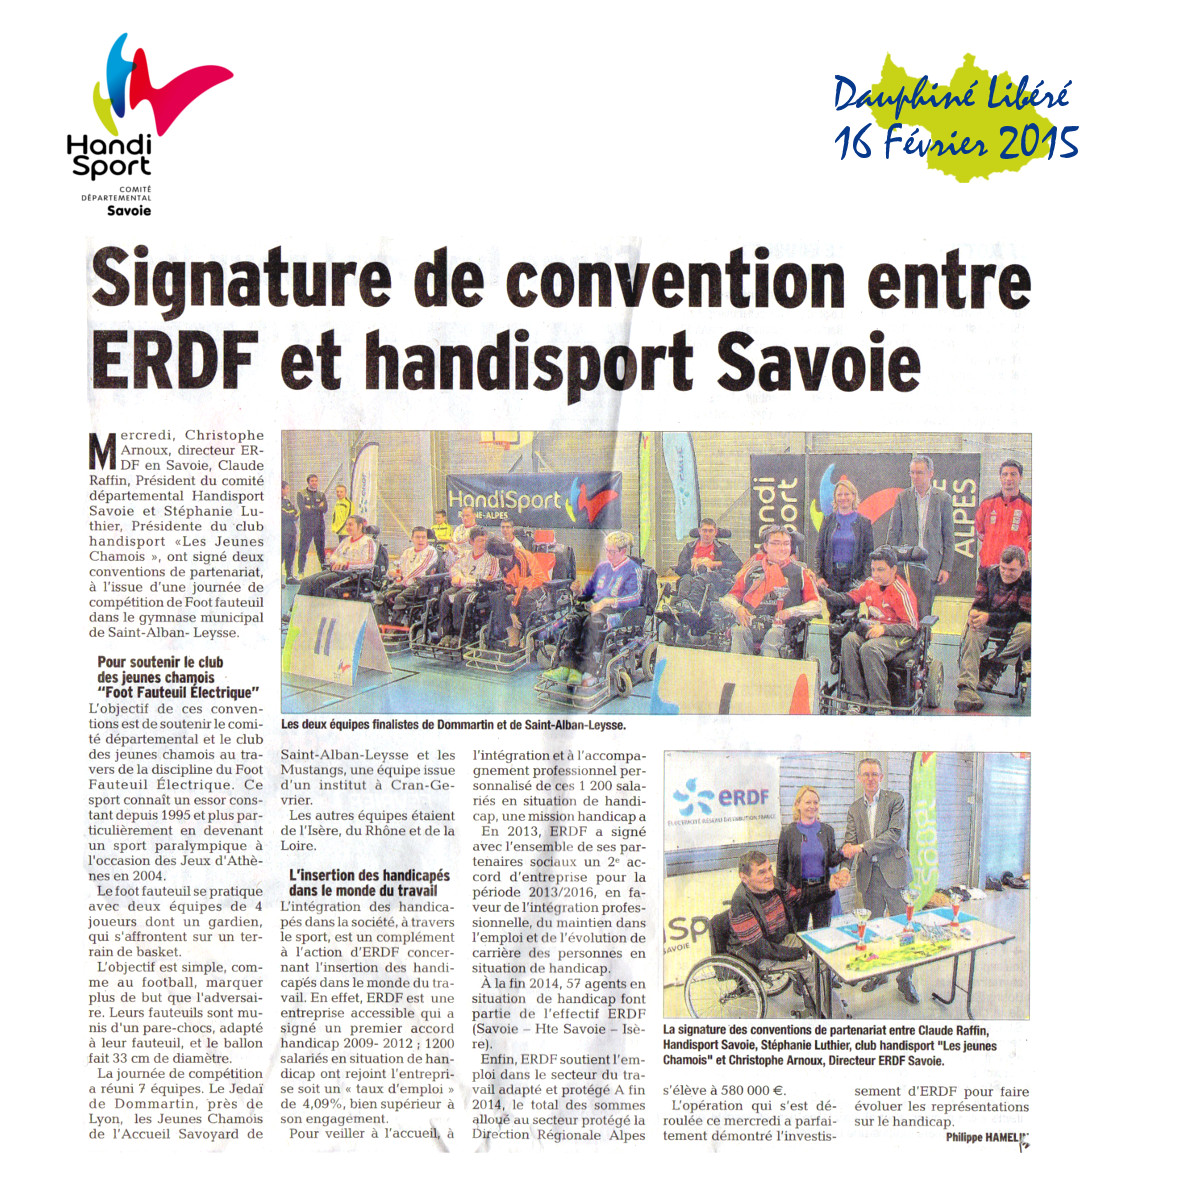 Handisport Savoie - ERDF